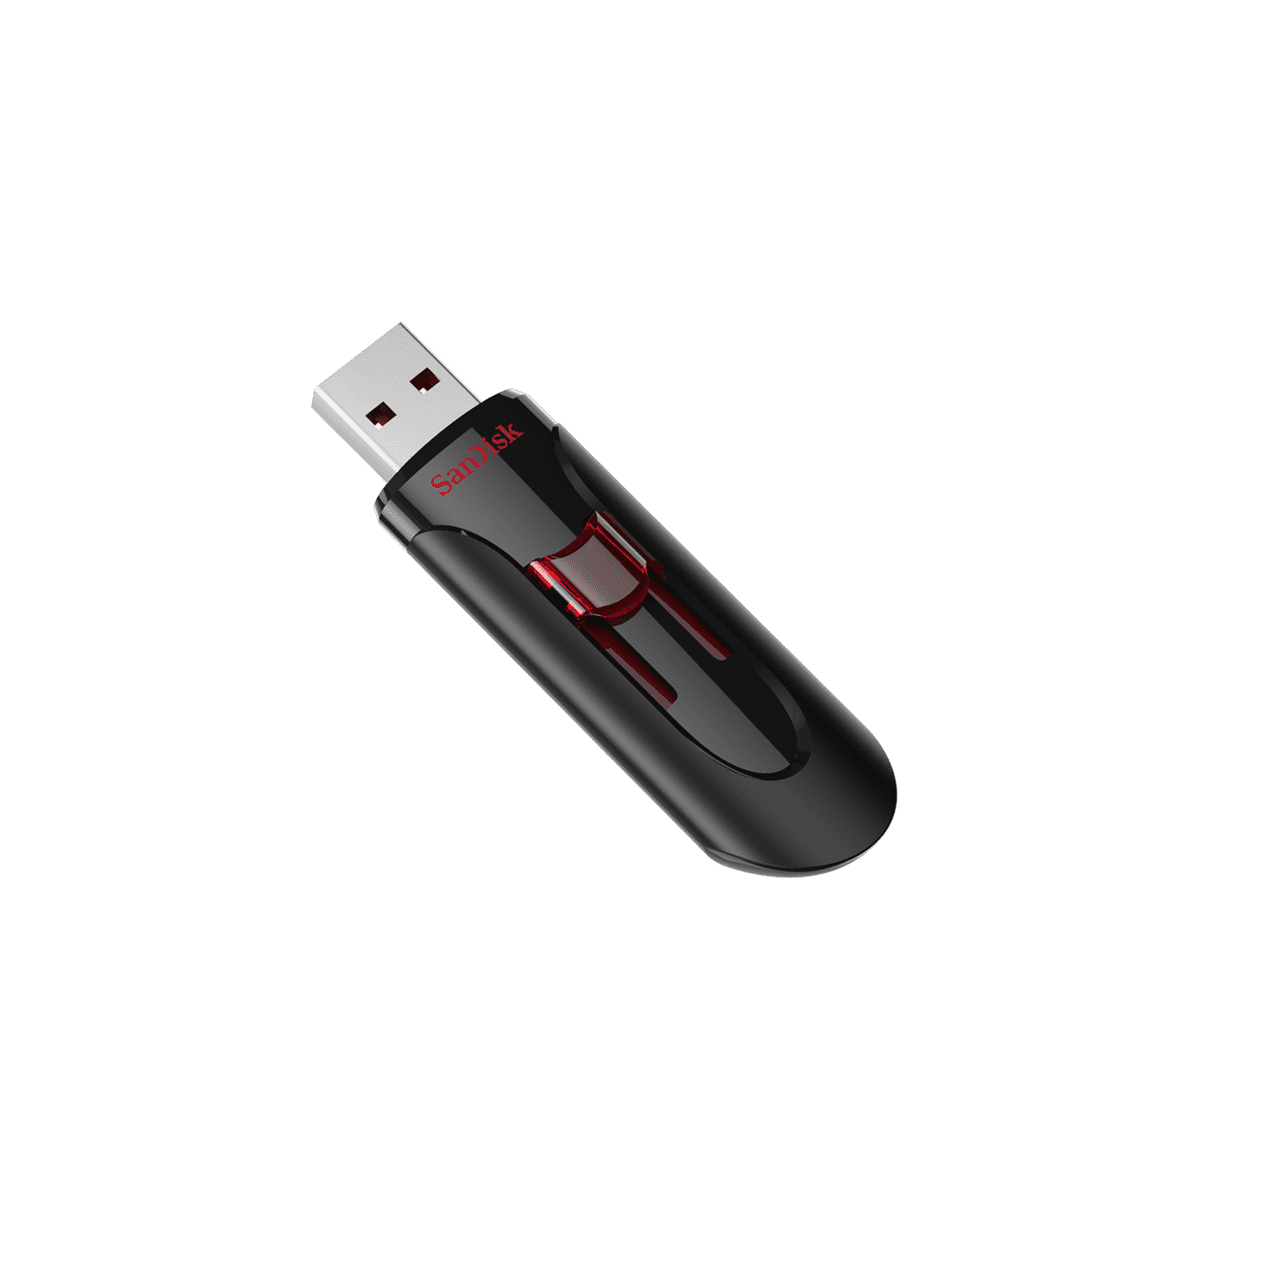 SanDisk Cruzer Glide 64GB